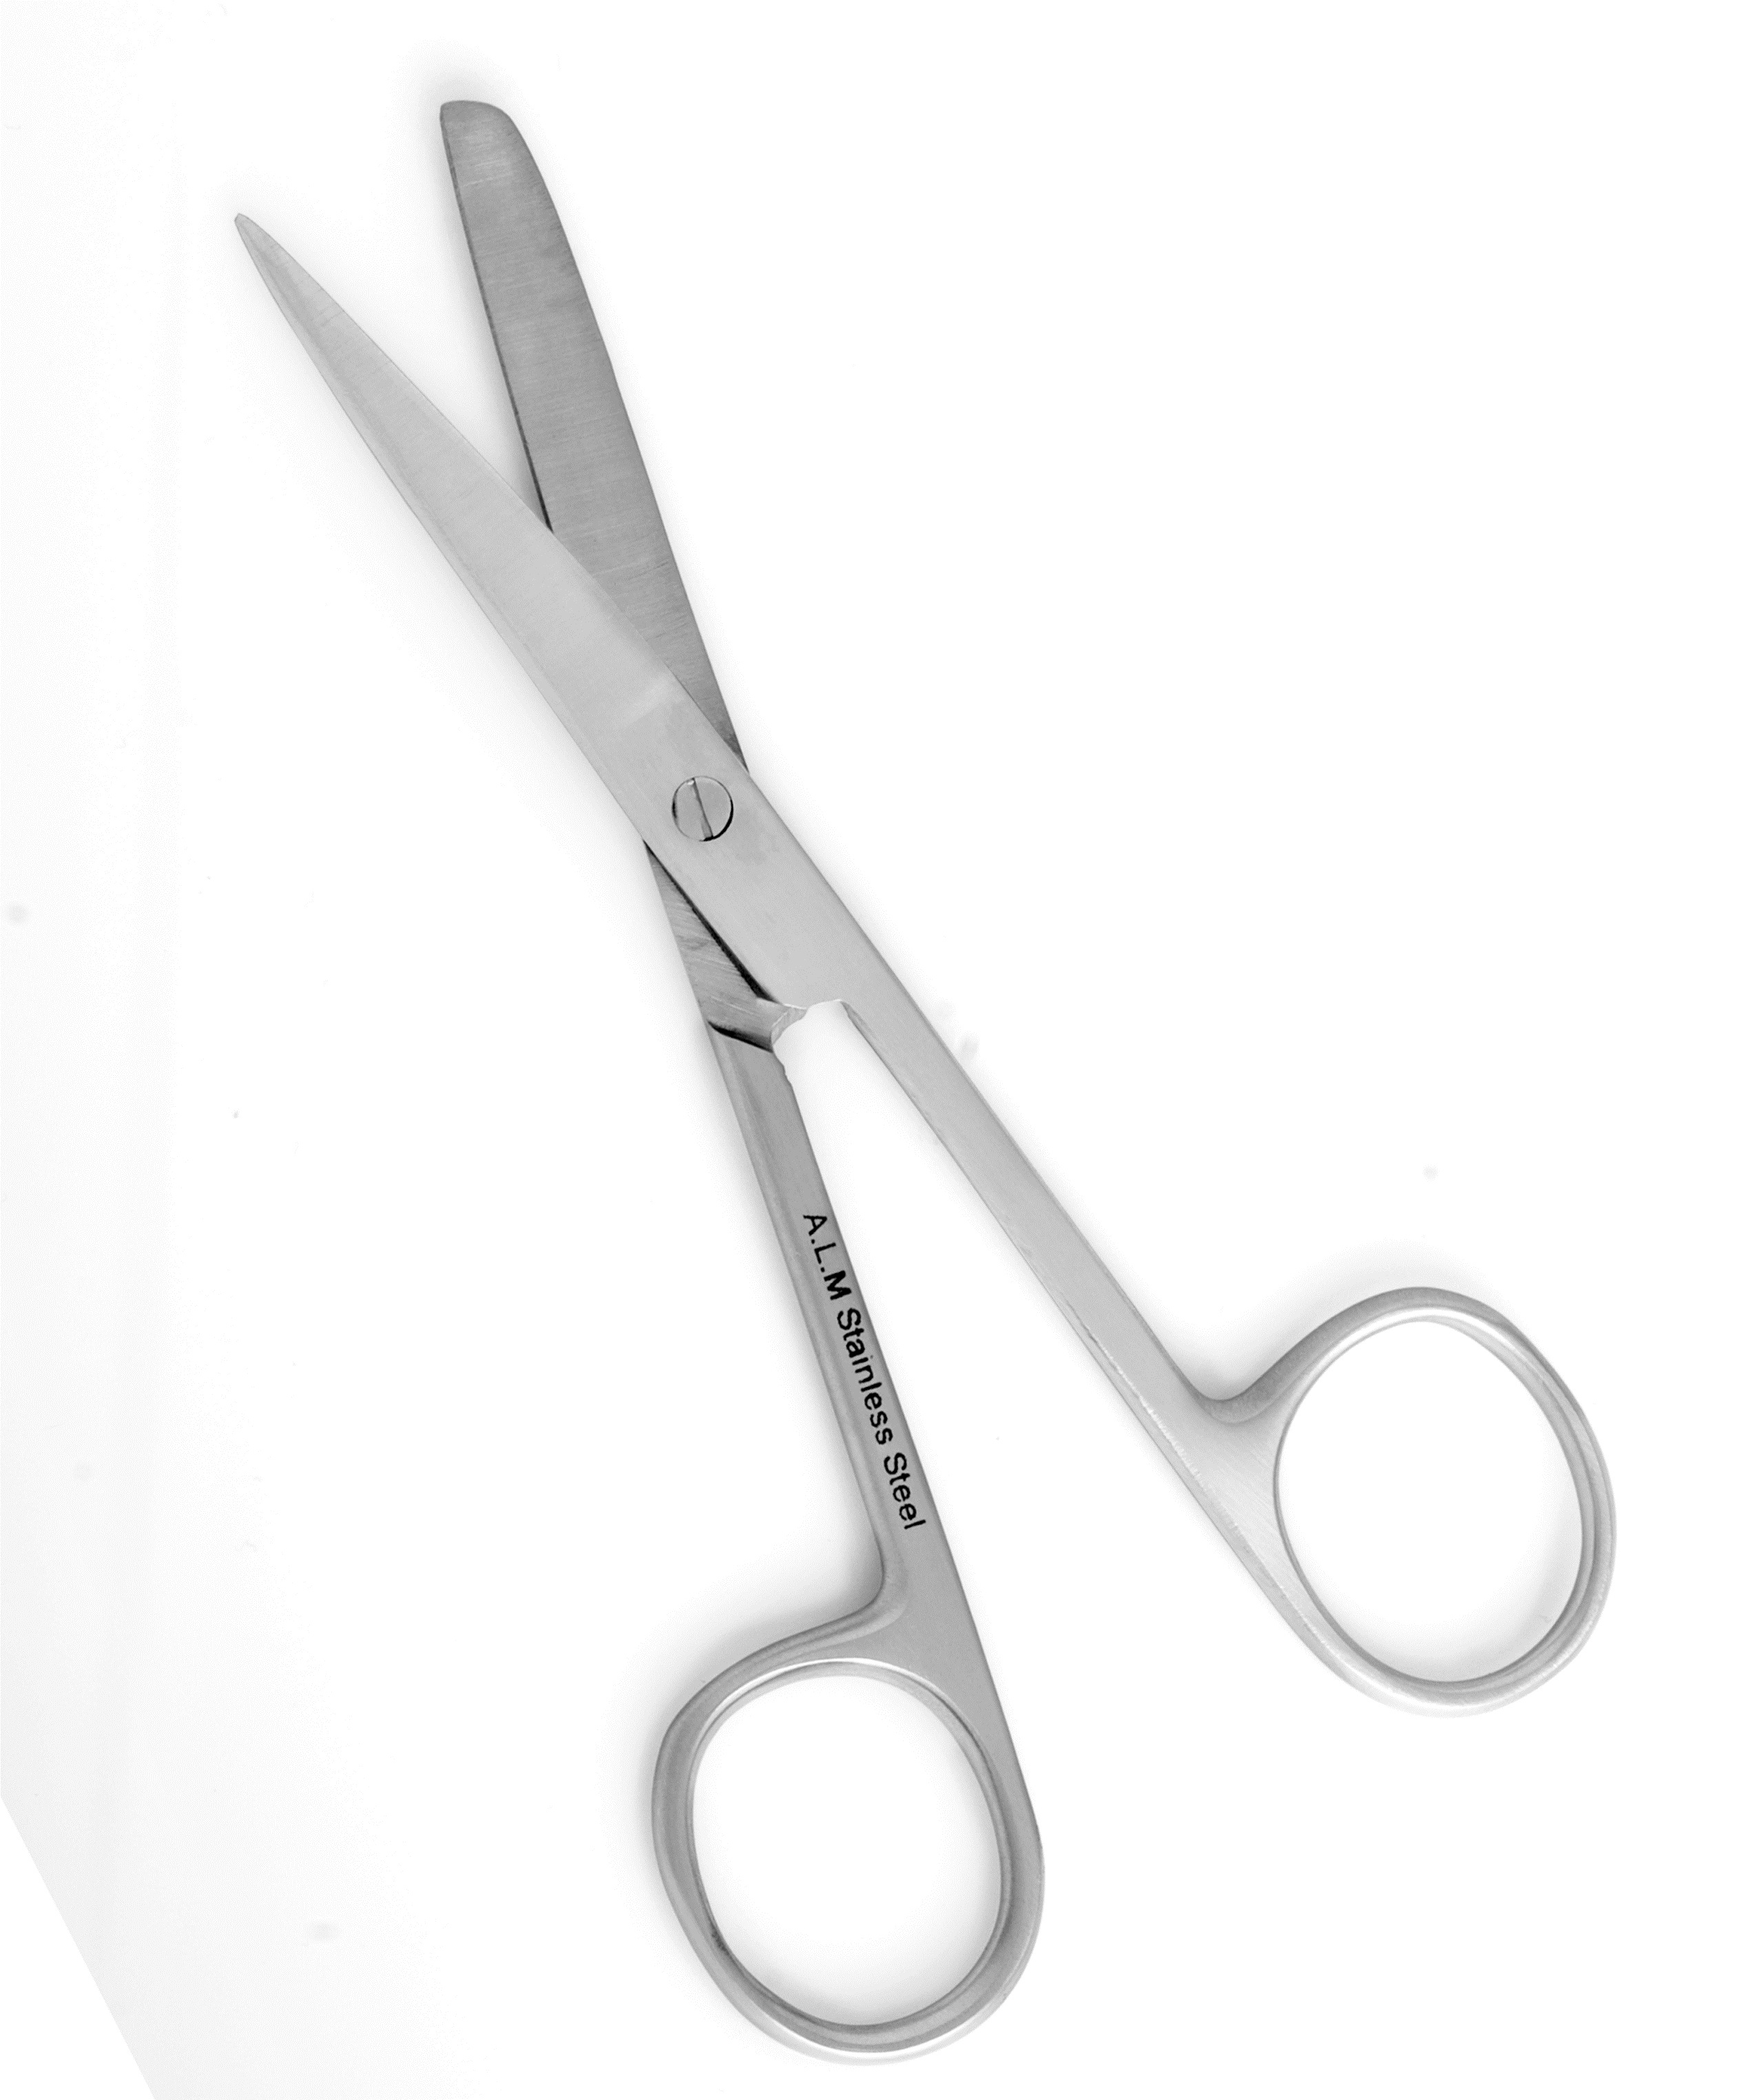 ALM-07-165 13cm Scissors